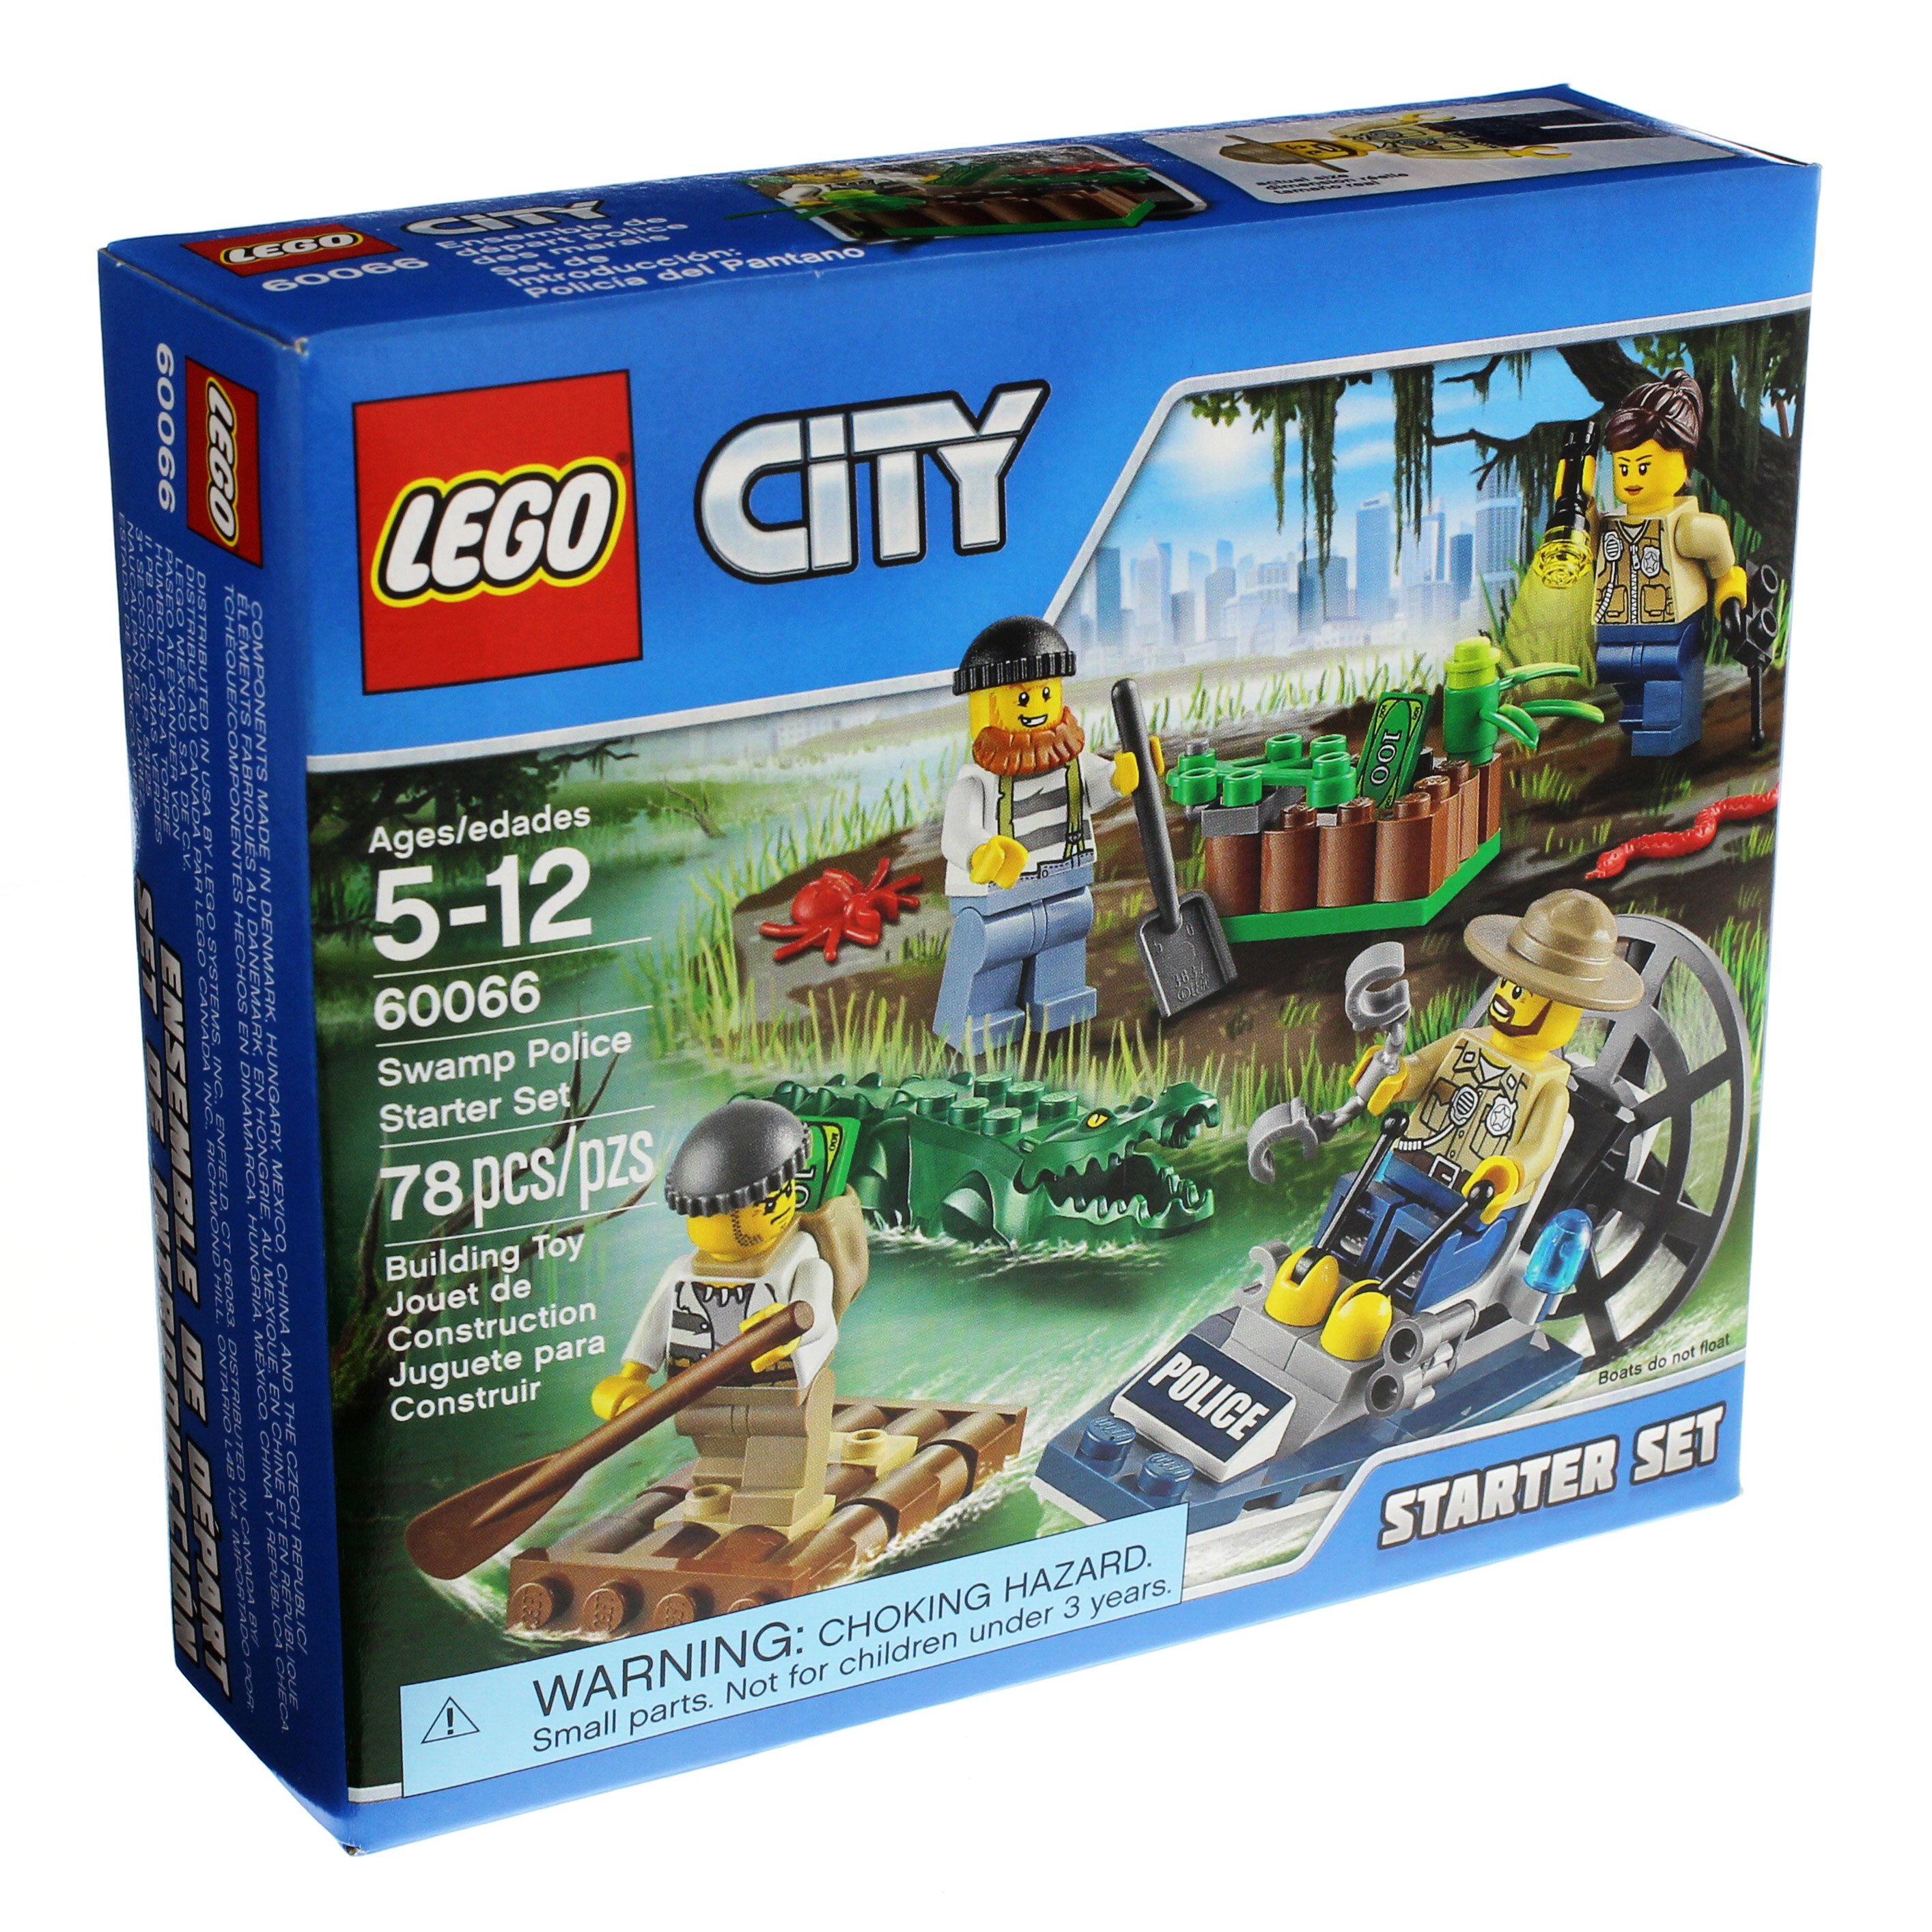 LEGO City Starter Set - Shop at